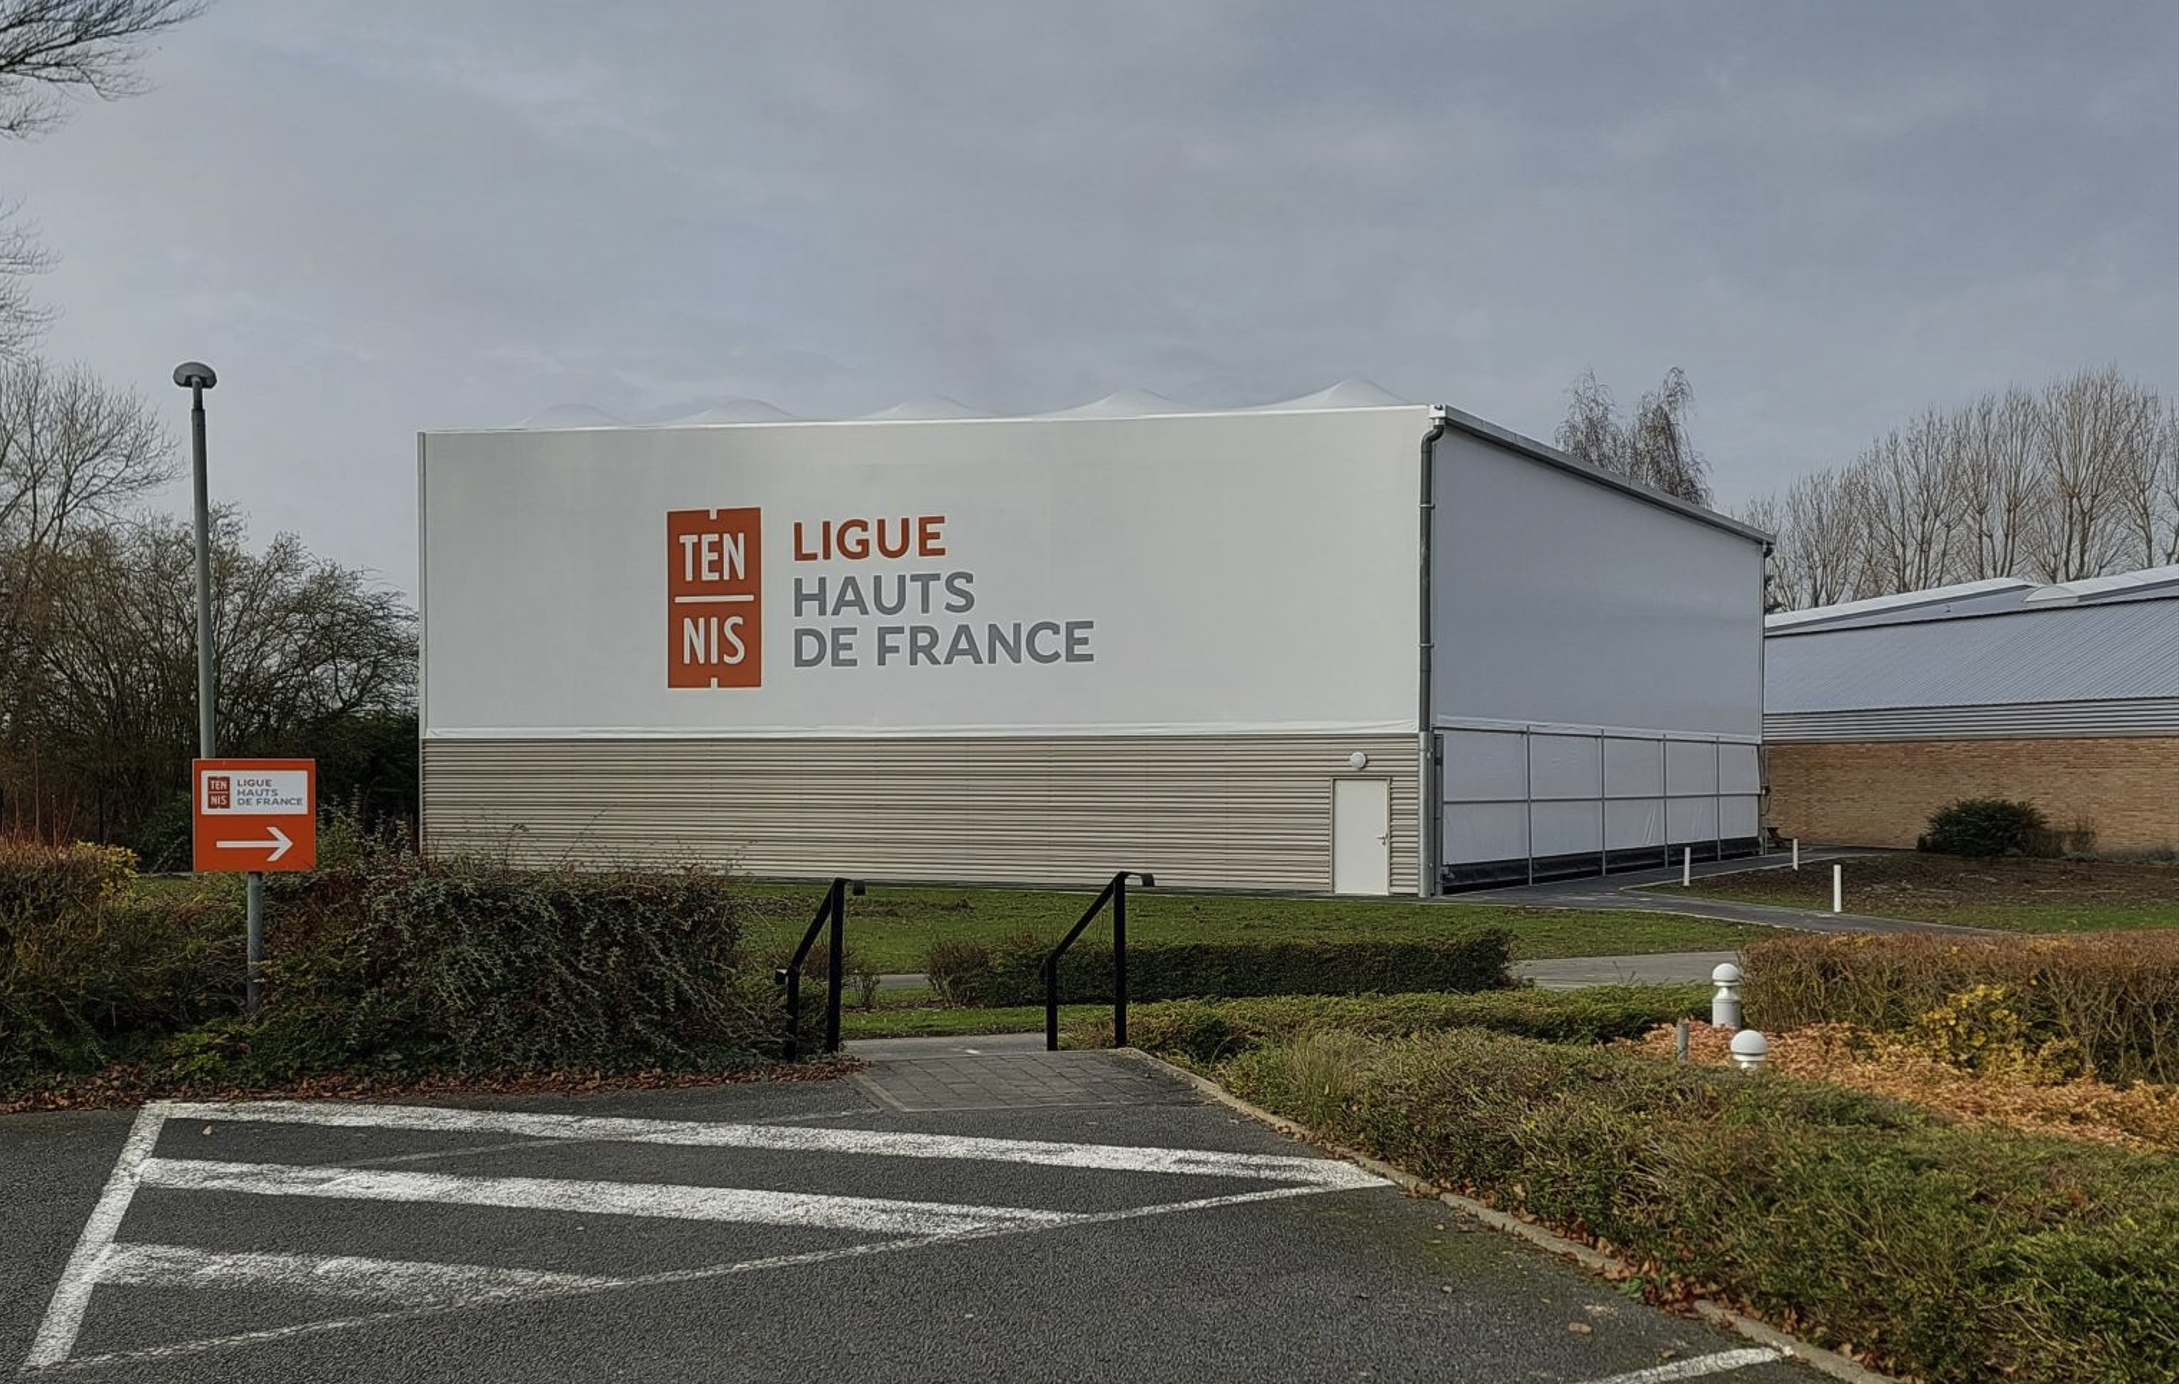 The Hauts-de-France League has 2 padel indoor